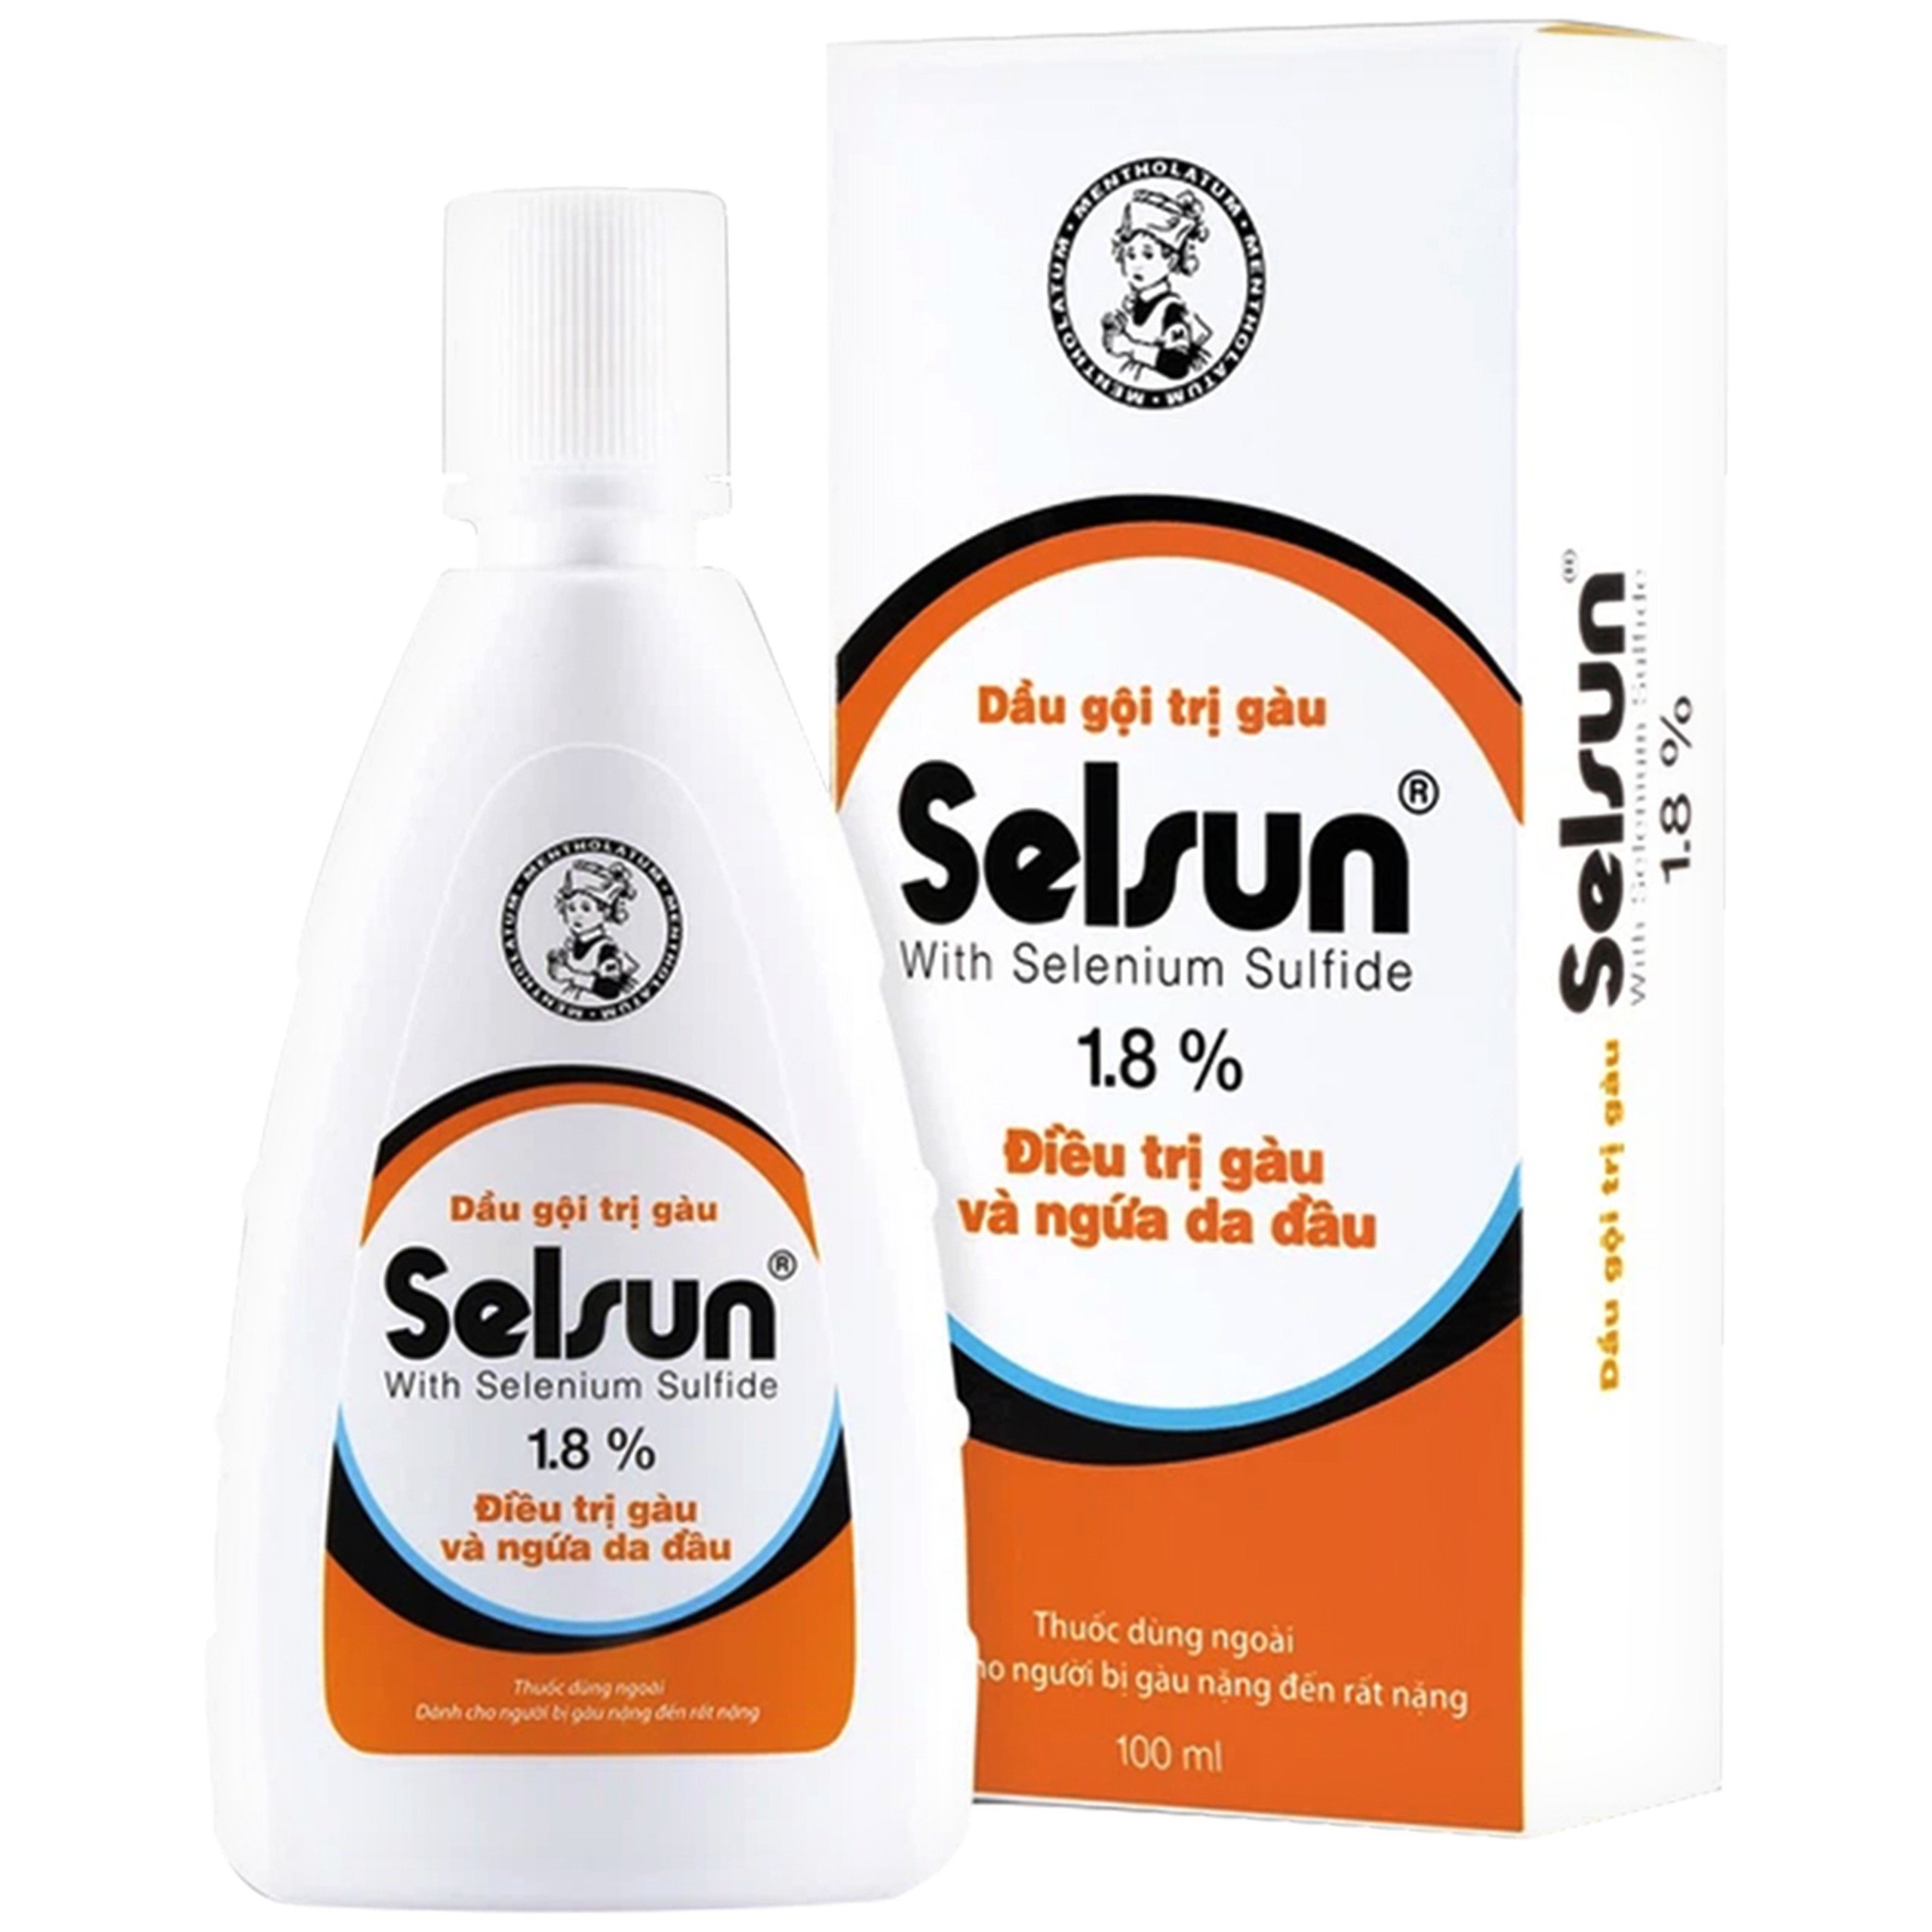 Dầu gội trị gàu Selsun 1,8% Rohto điều trị gàu và ngứa da đầu (100ml)